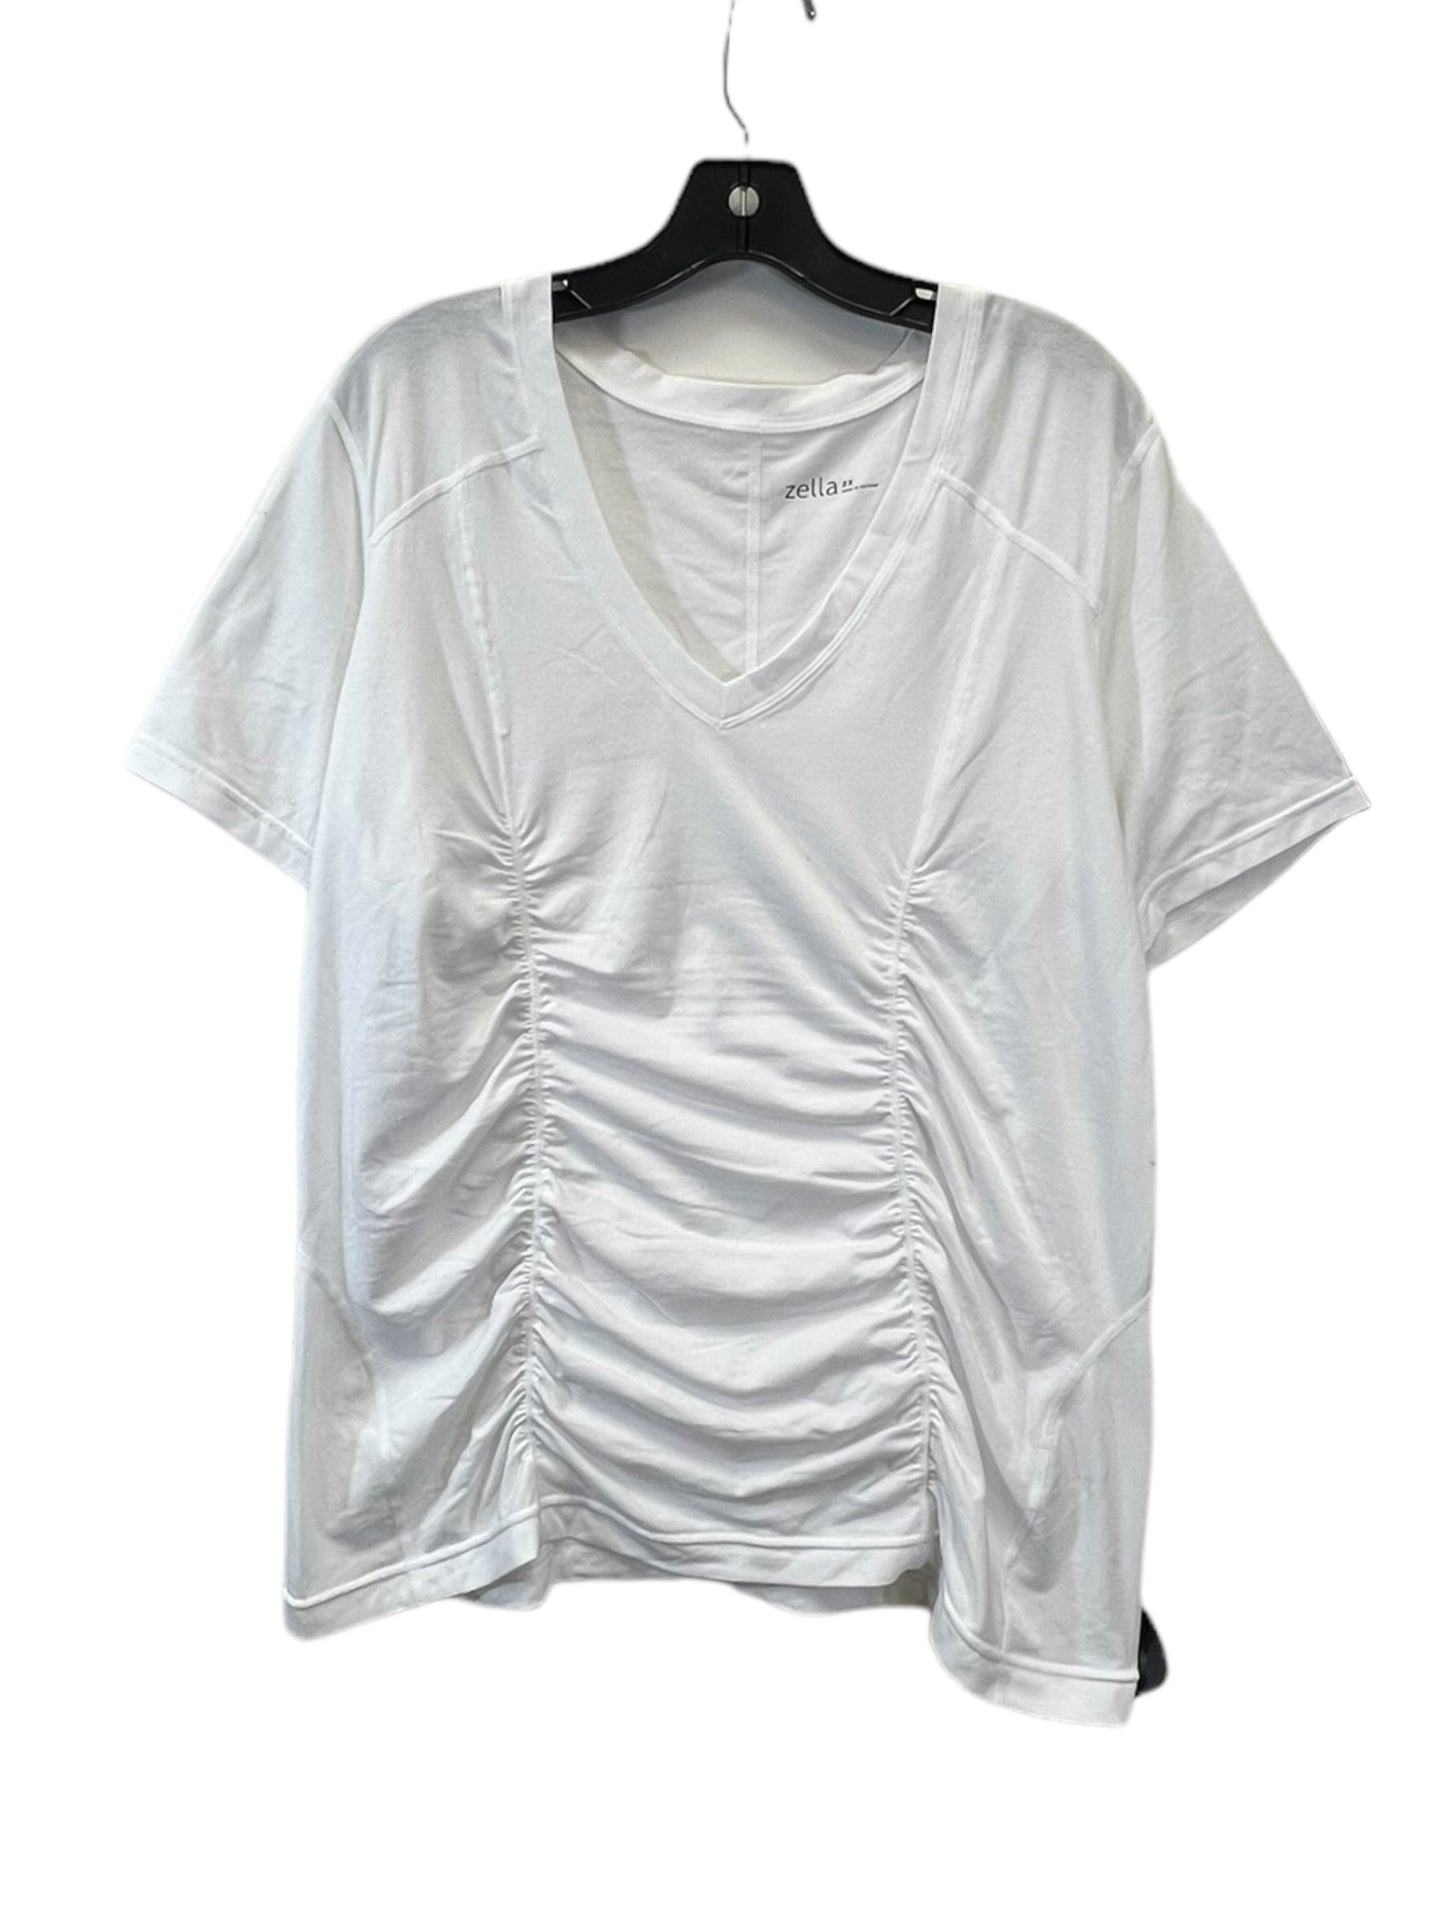 White Top Short Sleeve Basic Zella, Size 2x